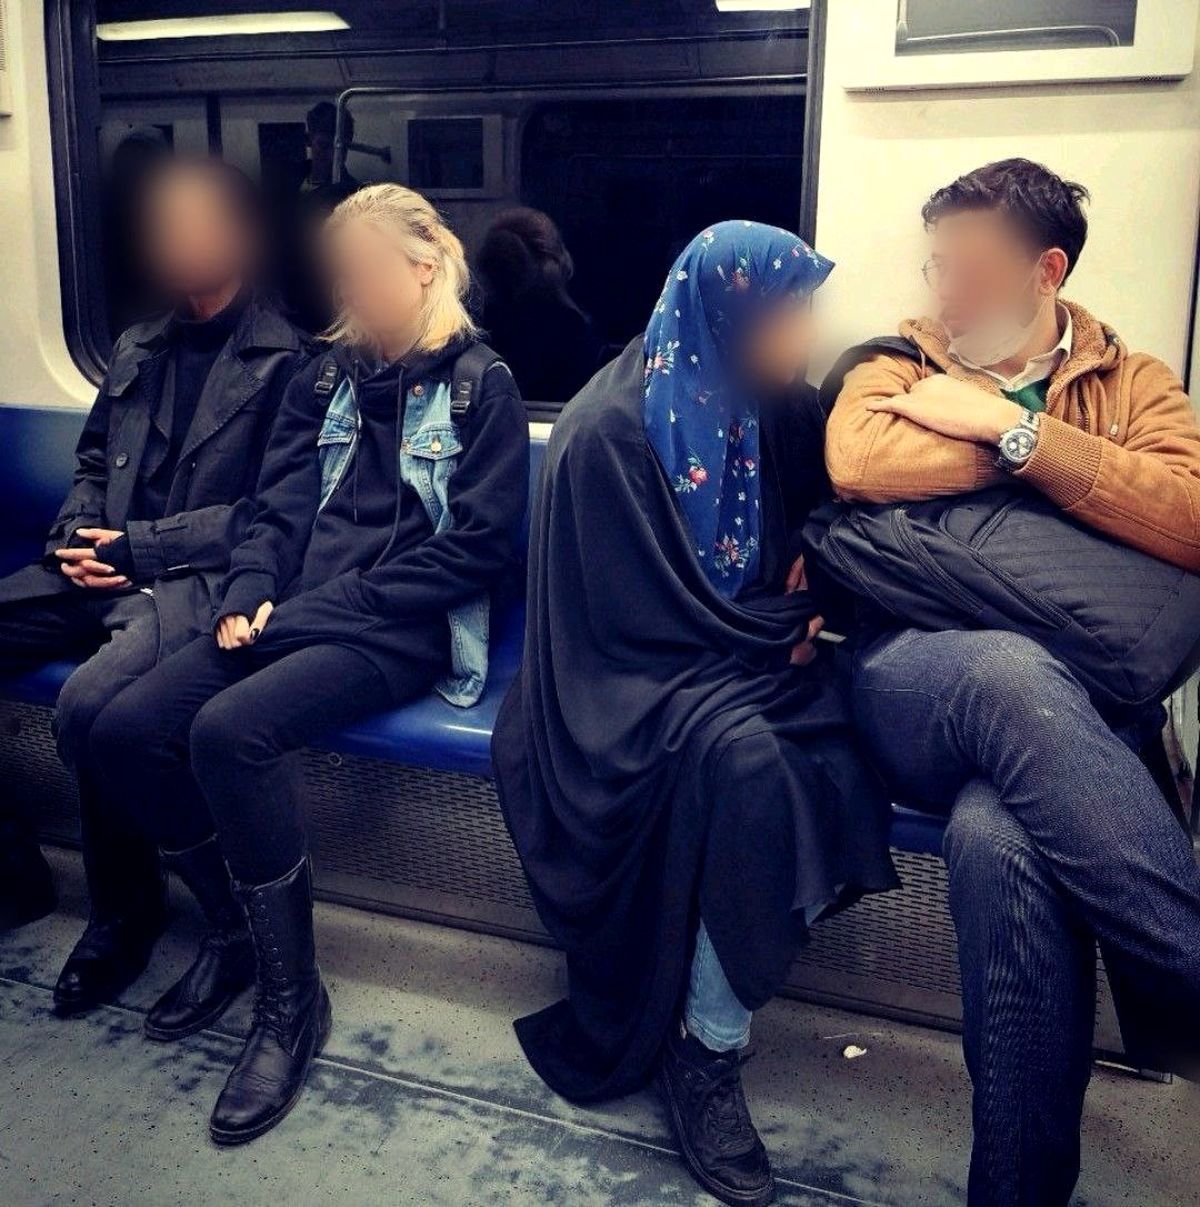 چطور بفهمیم کسی که کنار ما روی صندلی مترو نشسته خطرناک است؟